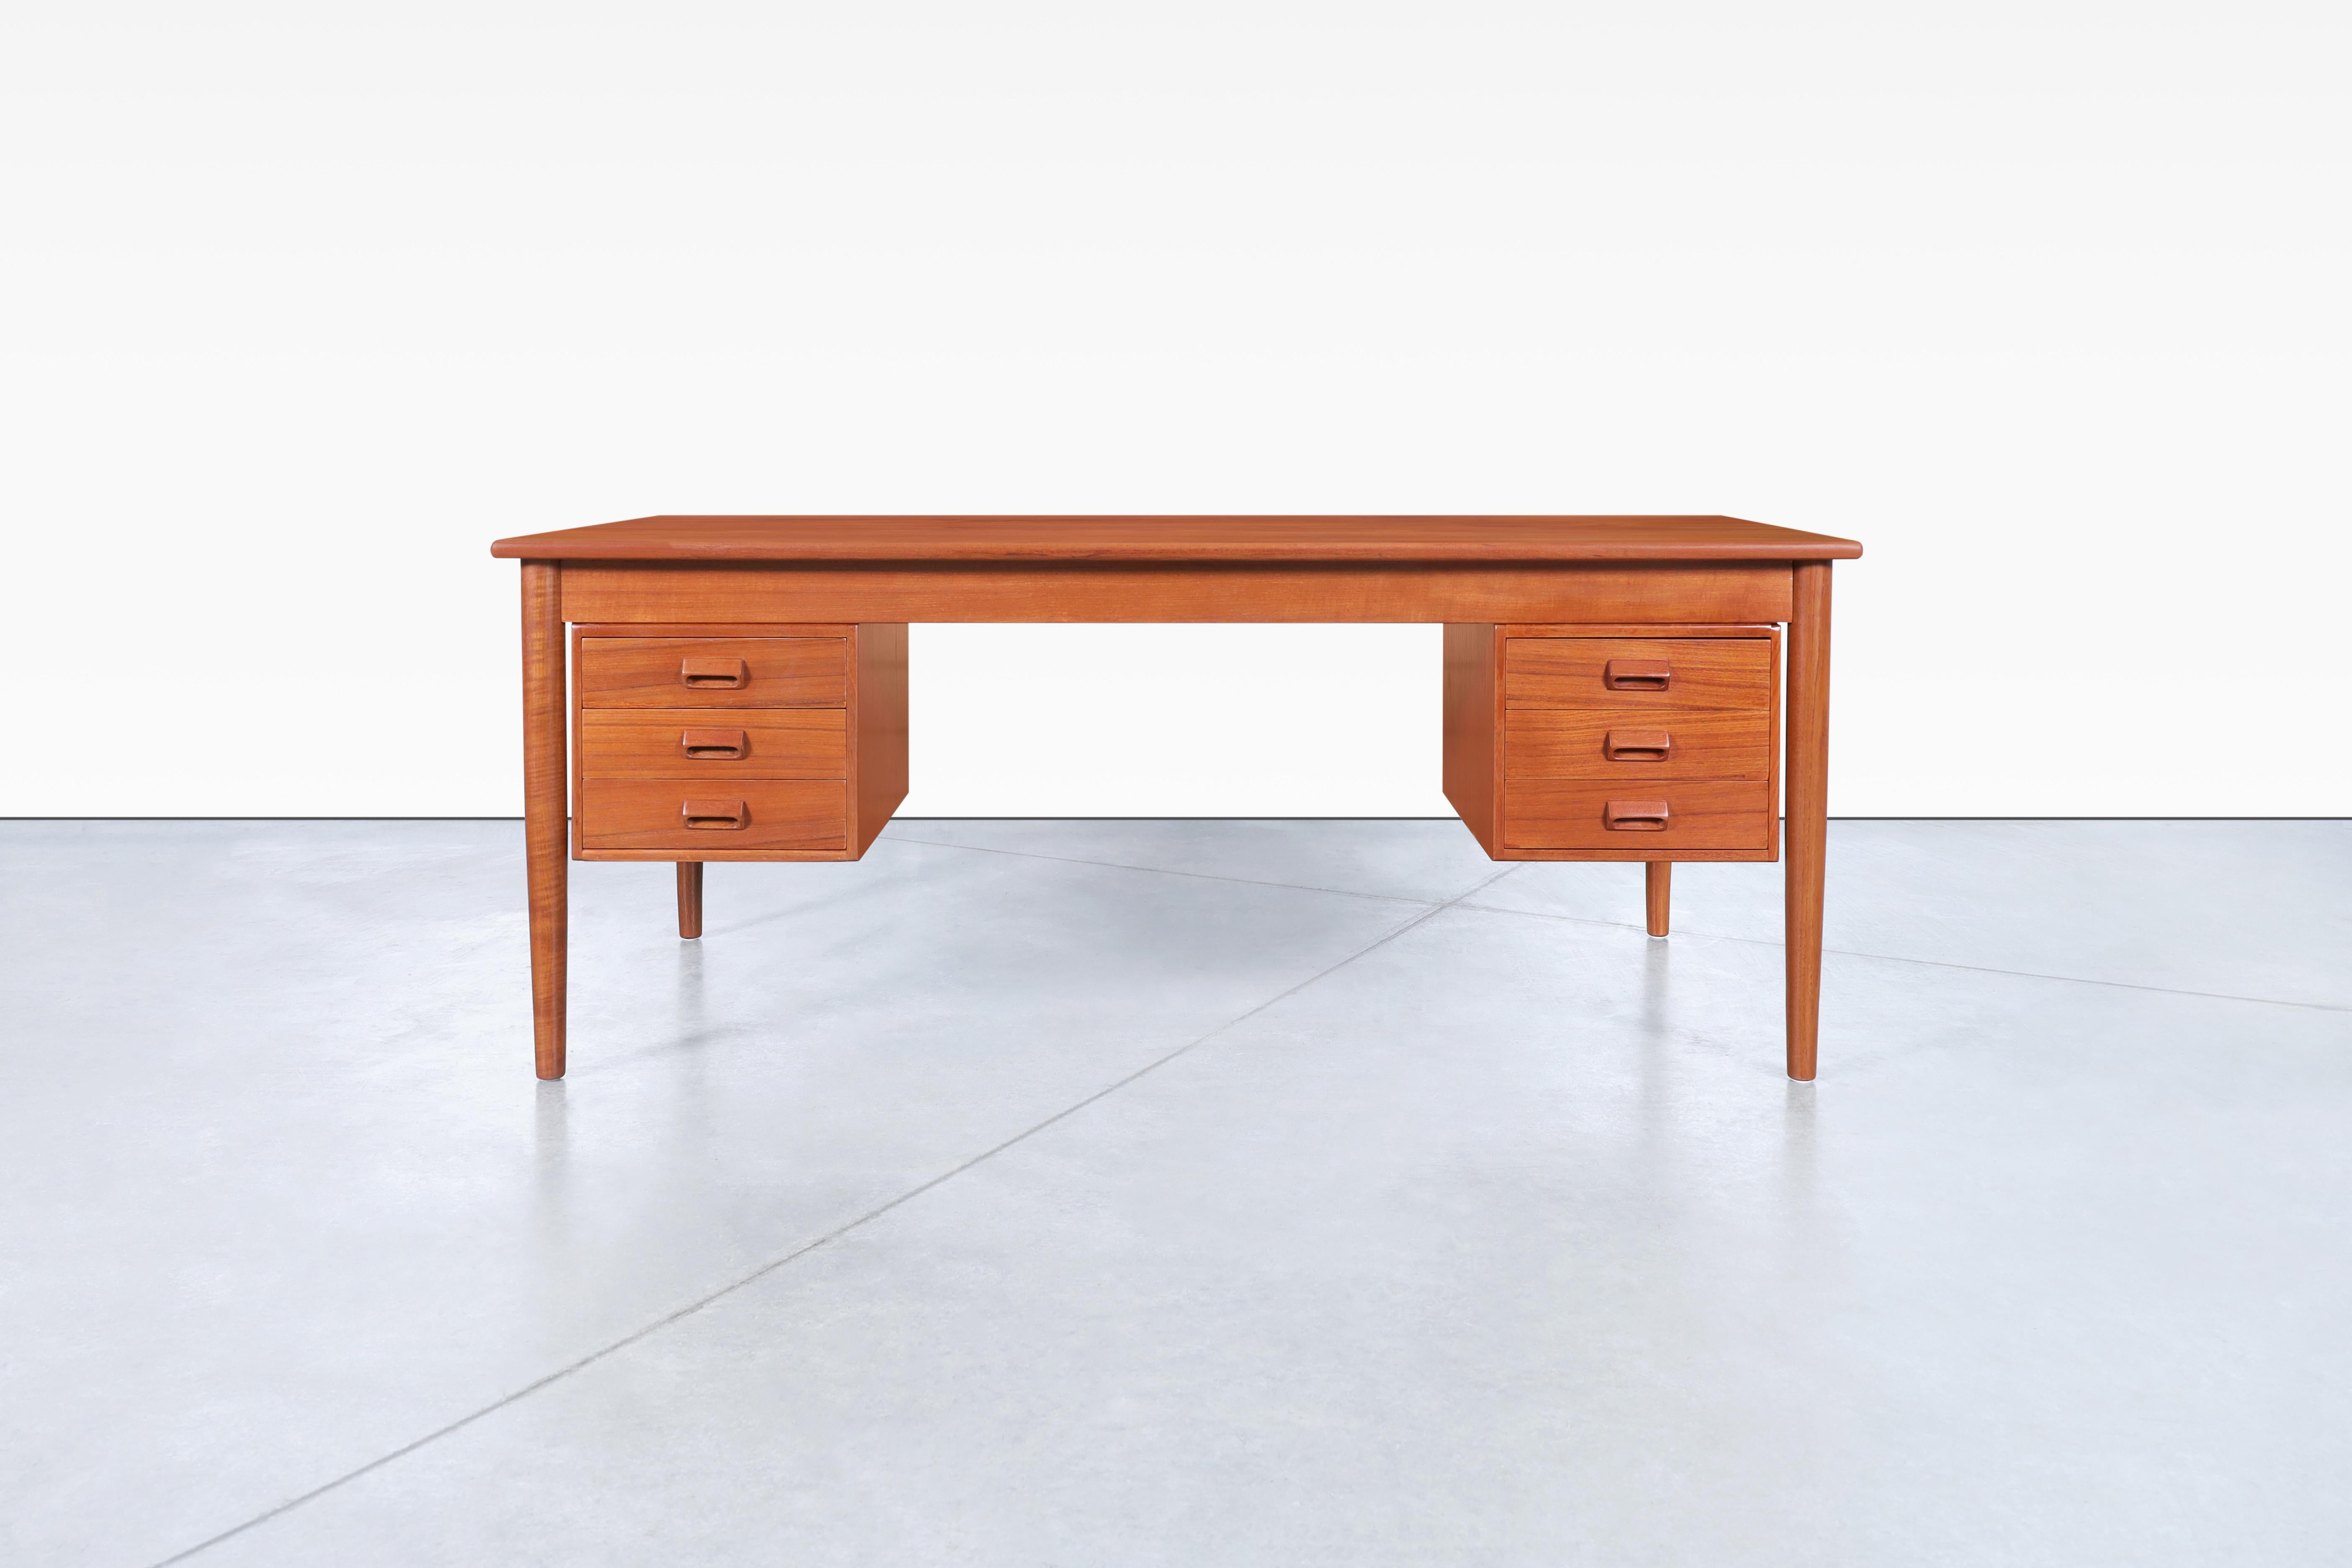 Atemberaubender moderner dänischer Teakholz-Schreibtisch, auch bekannt als Modell #130, entworfen von Børge Mogensen für Søborg Møbler in Dänemark, ca. 1950er Jahre. Dieser exquisite Schreibtisch zeichnet sich durch ein vielseitiges Design aus, das